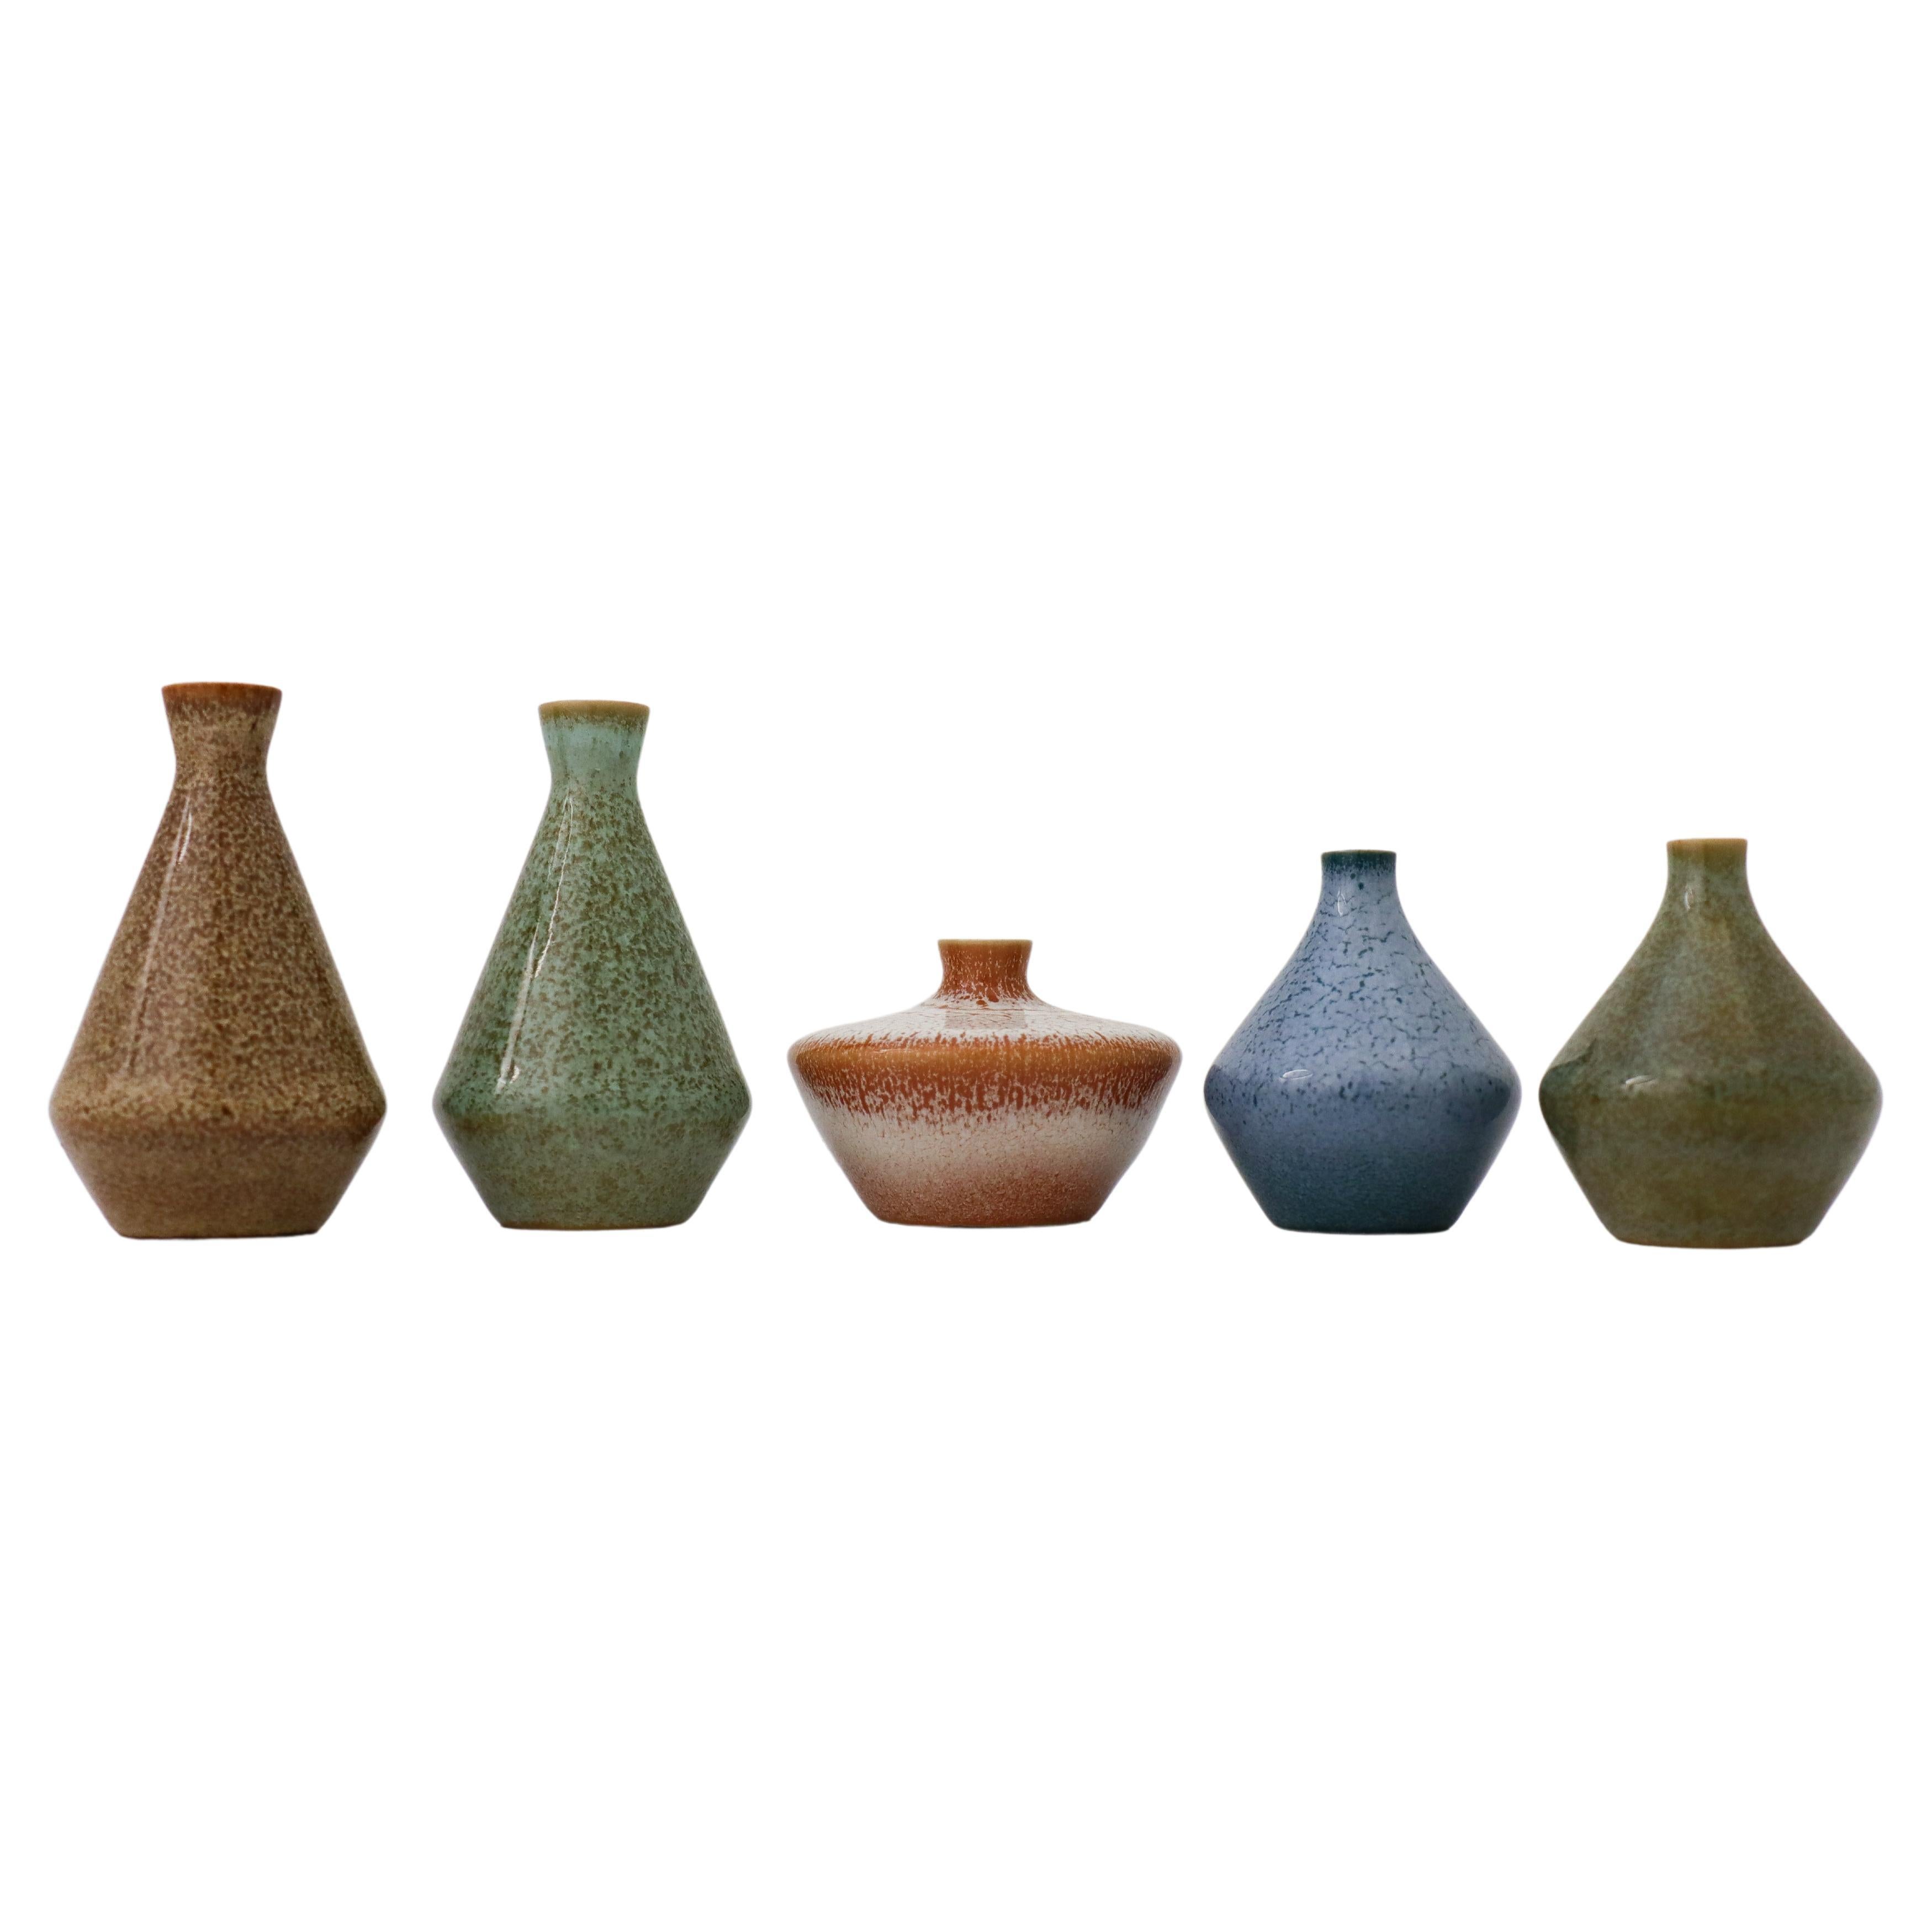 Group of 5 Miniature Vases, Bertil Lundgren, Rörstrand, Midcentury Vintage For Sale